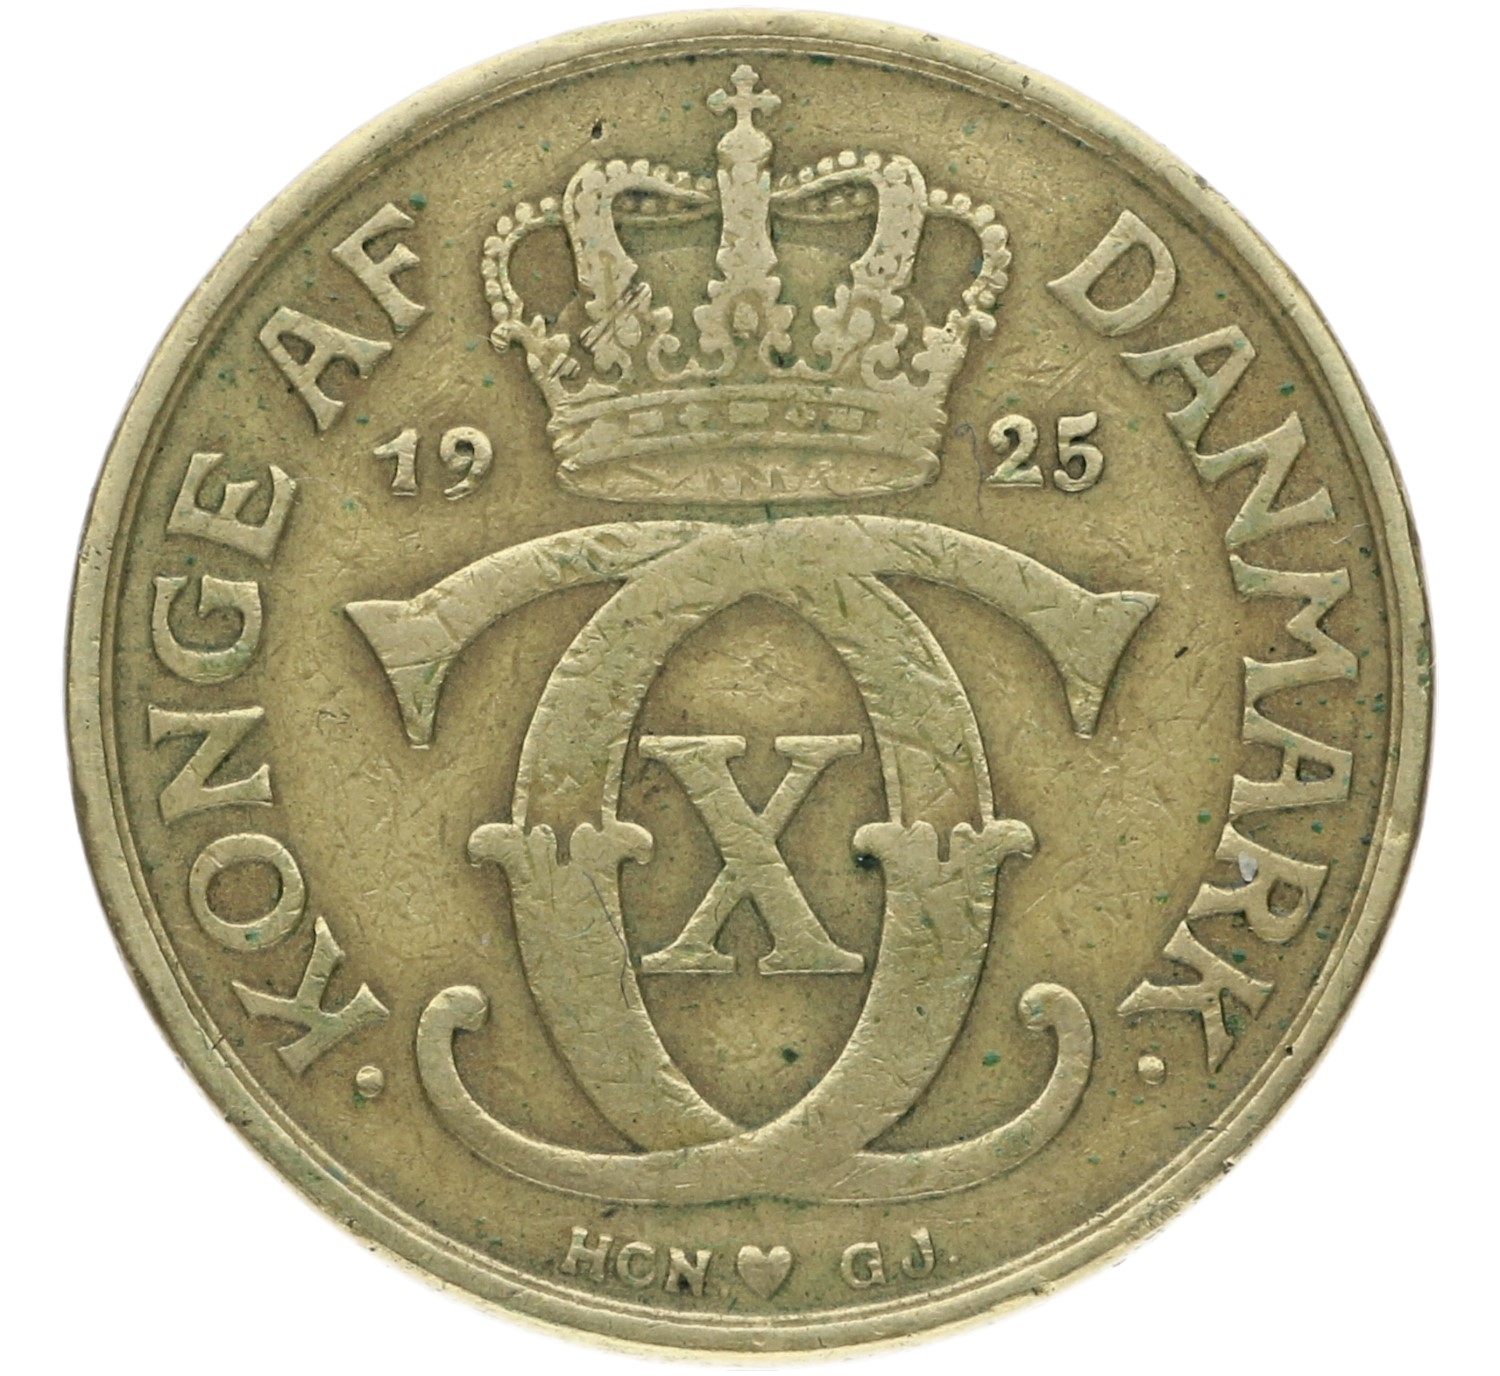 2 Kroner - Denmark - 1925